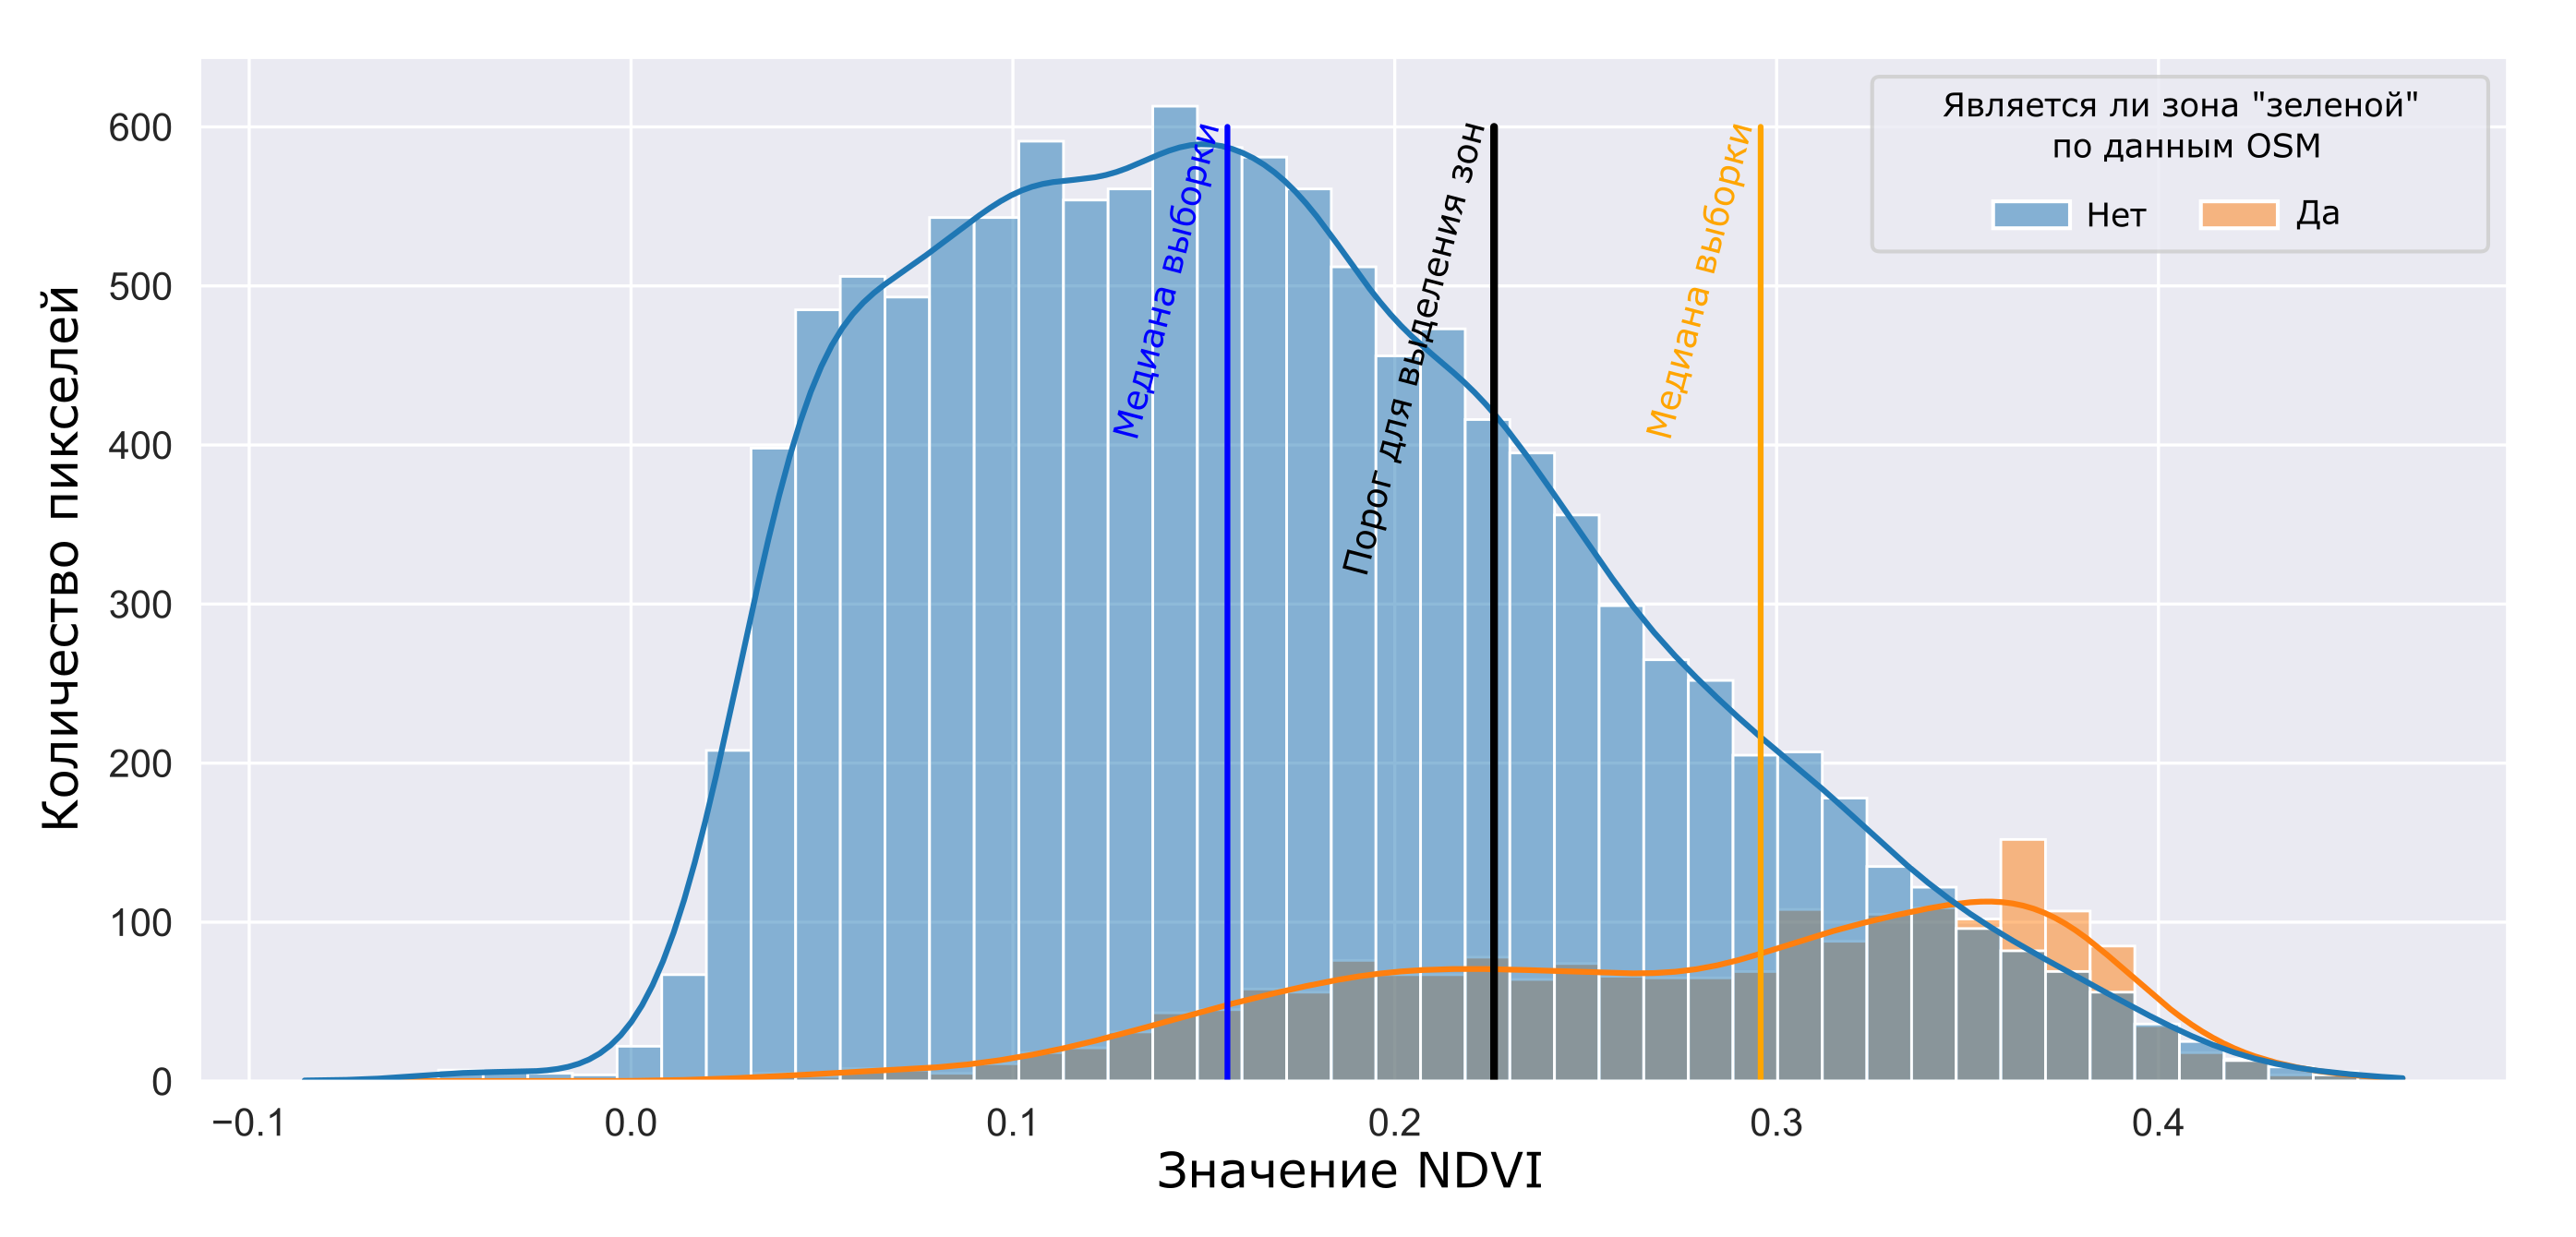 Рисунок 4. Частотная гистограмма по двум классам: значения NDVI в погонах “зеленых объектов” по данным OSM и остальные значения NDVI на снимке